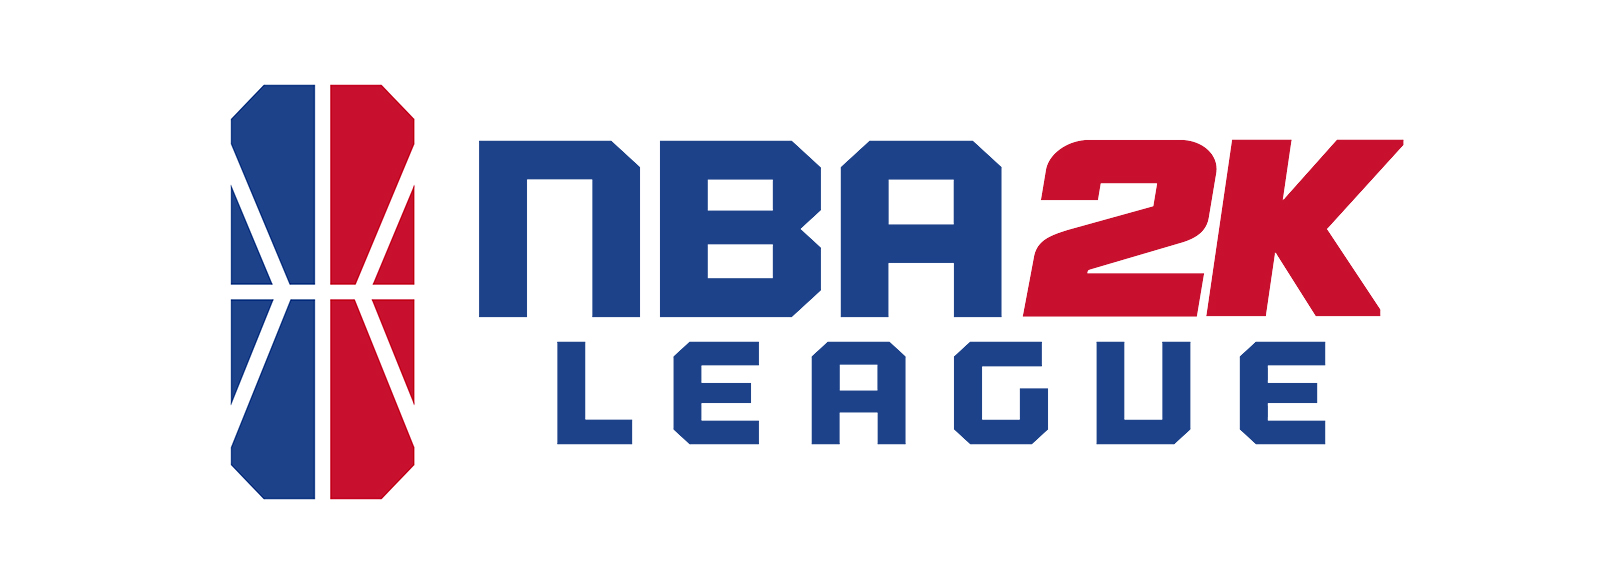 NBA 2K24] LEAGUE PASS FAQ – 2K Support